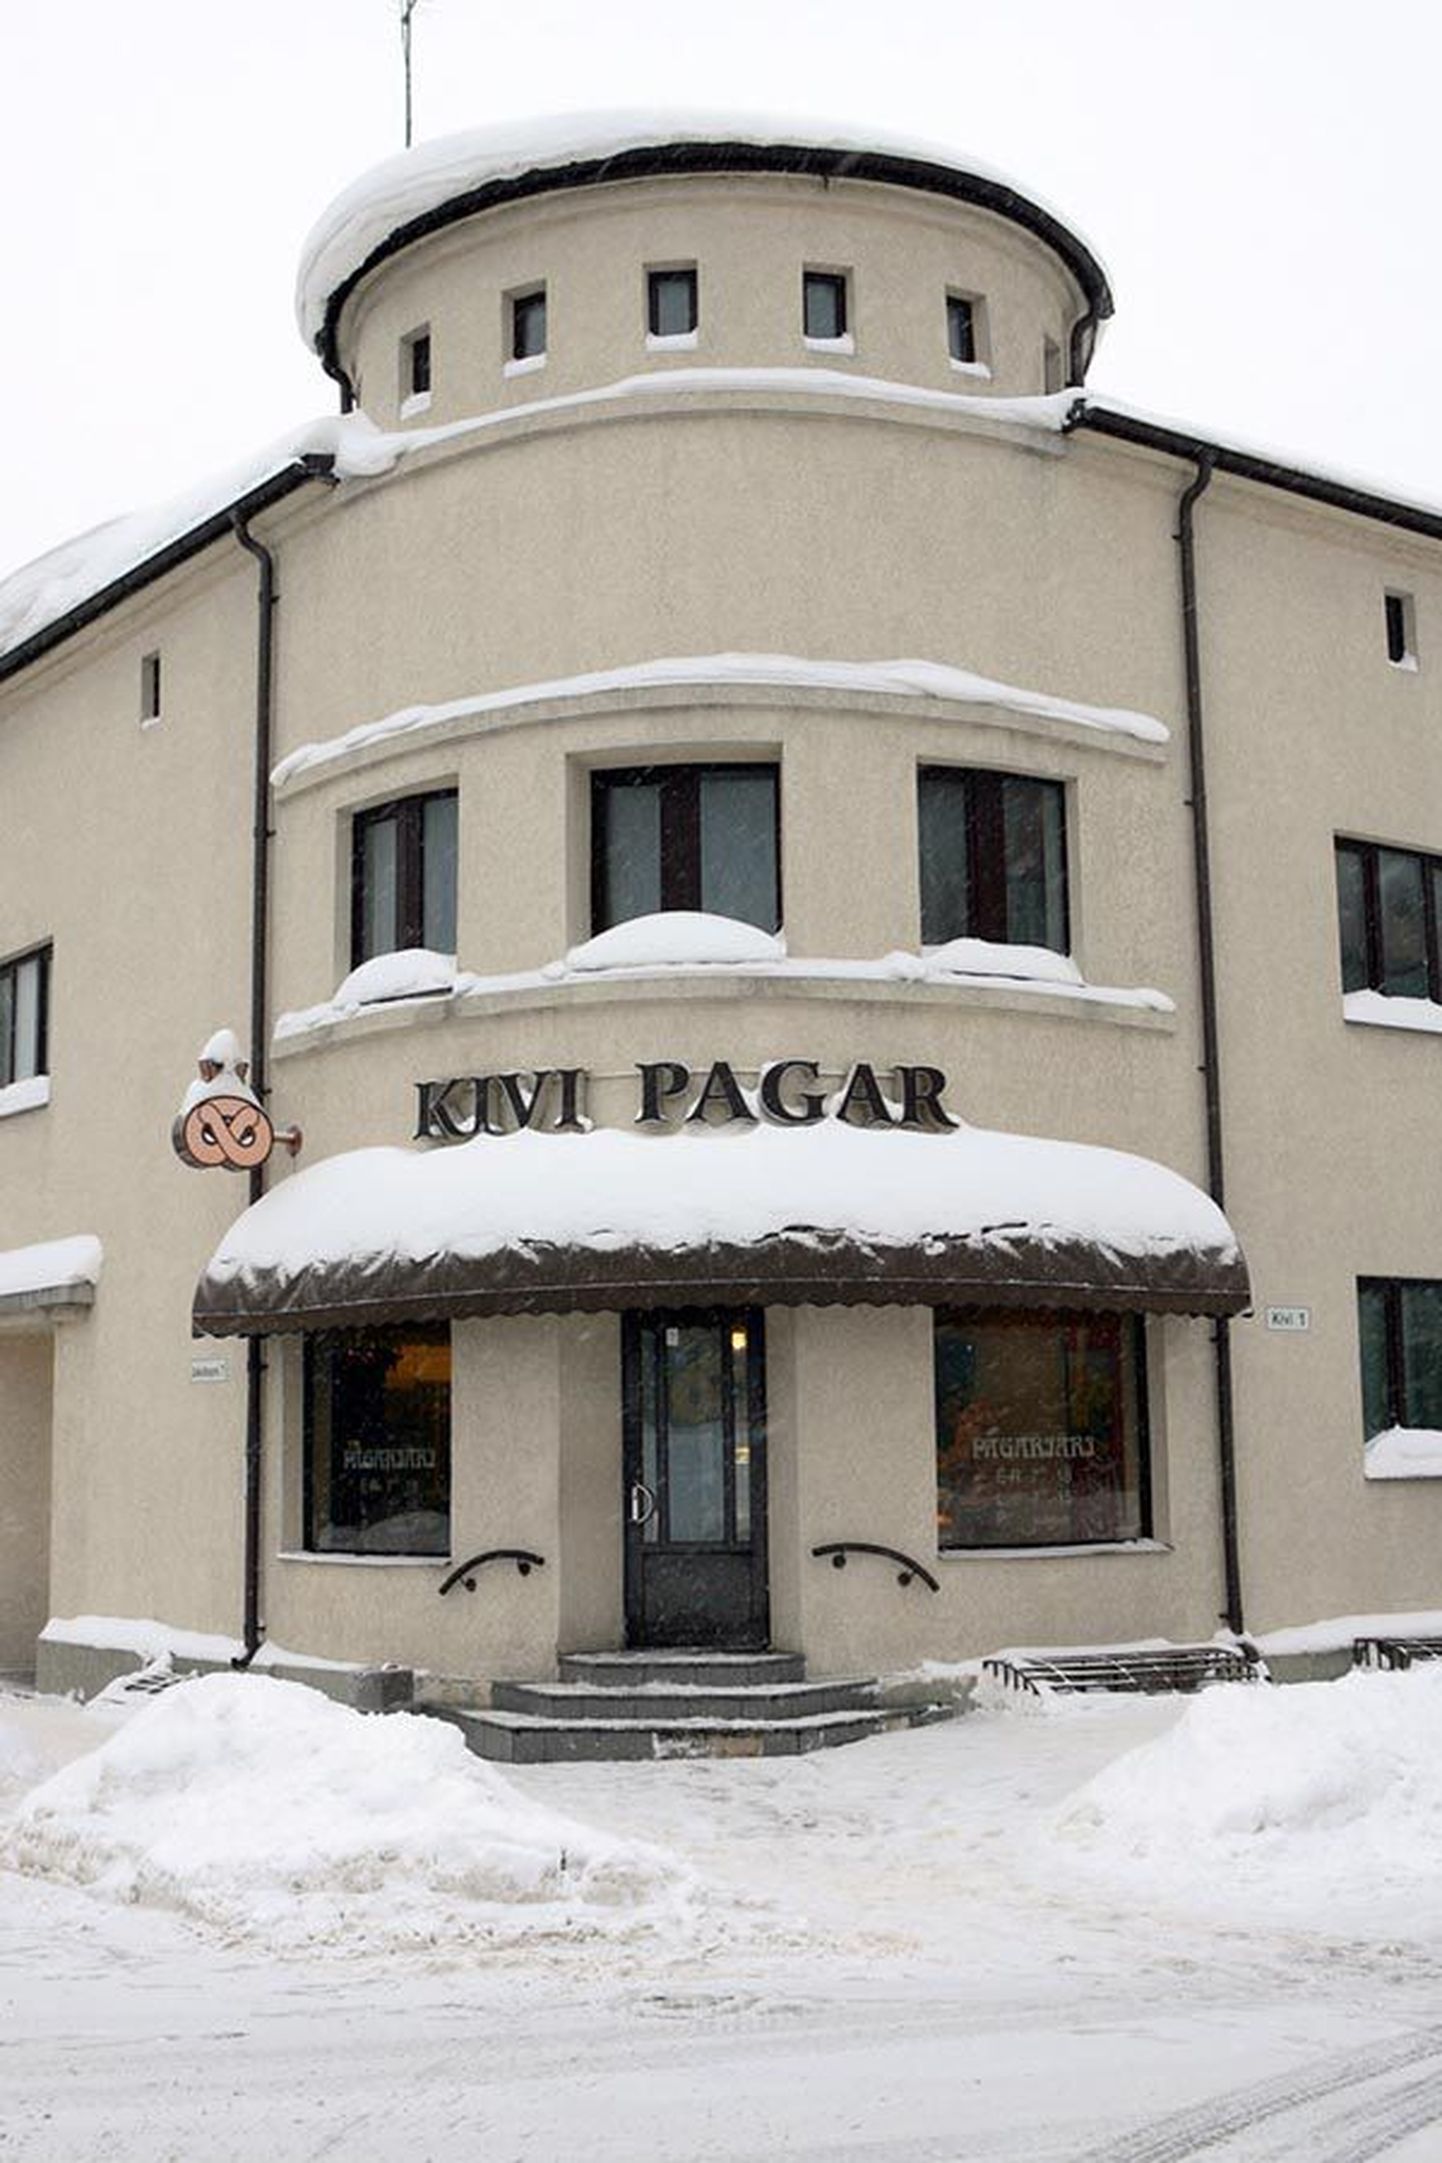 Üks esimesi Eesti euroaja võltskupüüre tuli päevavalgele Viljandis Kivi Pagari kaupluses.